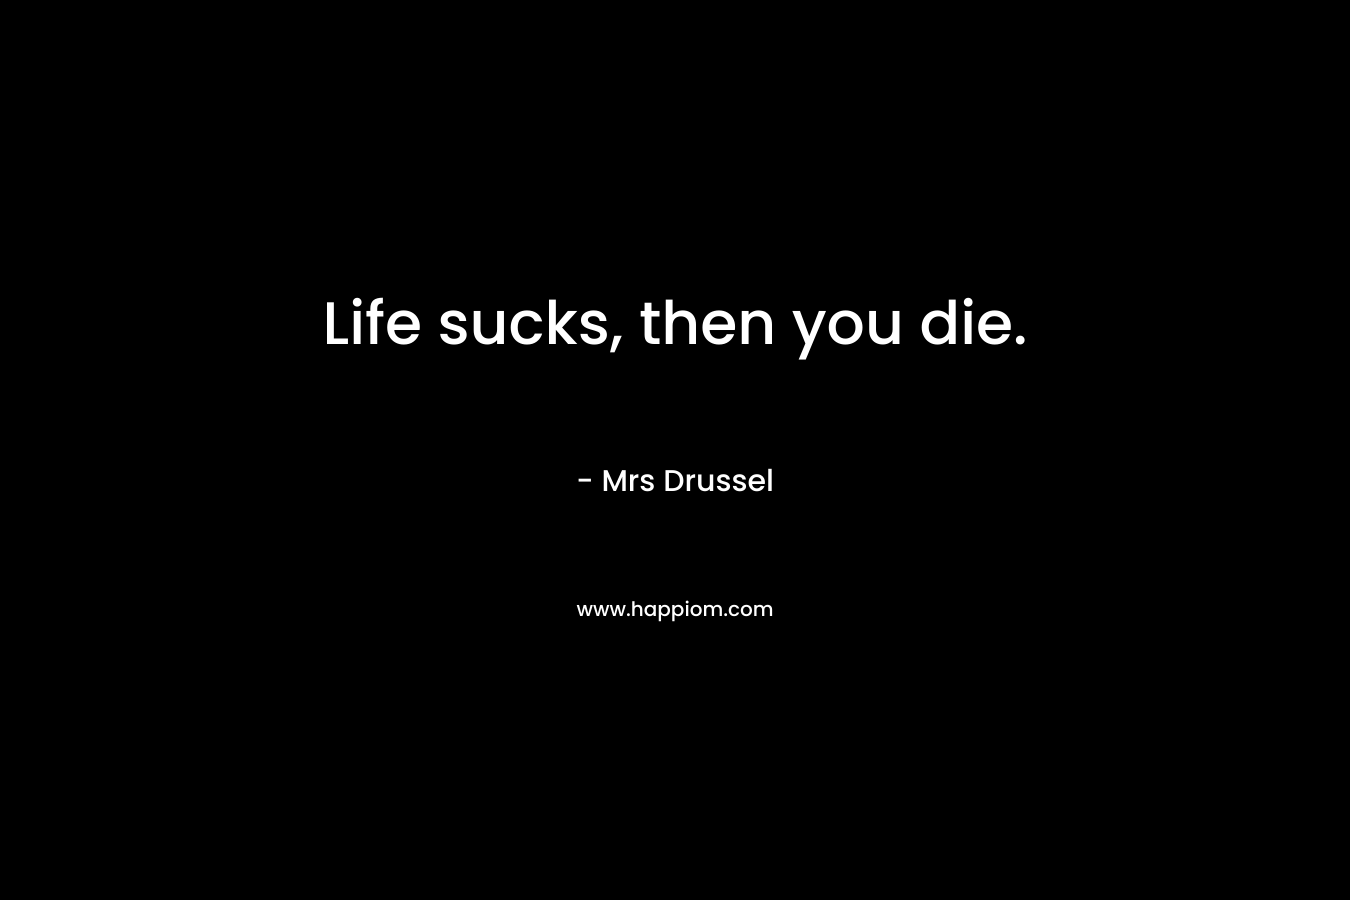 Life sucks, then you die.